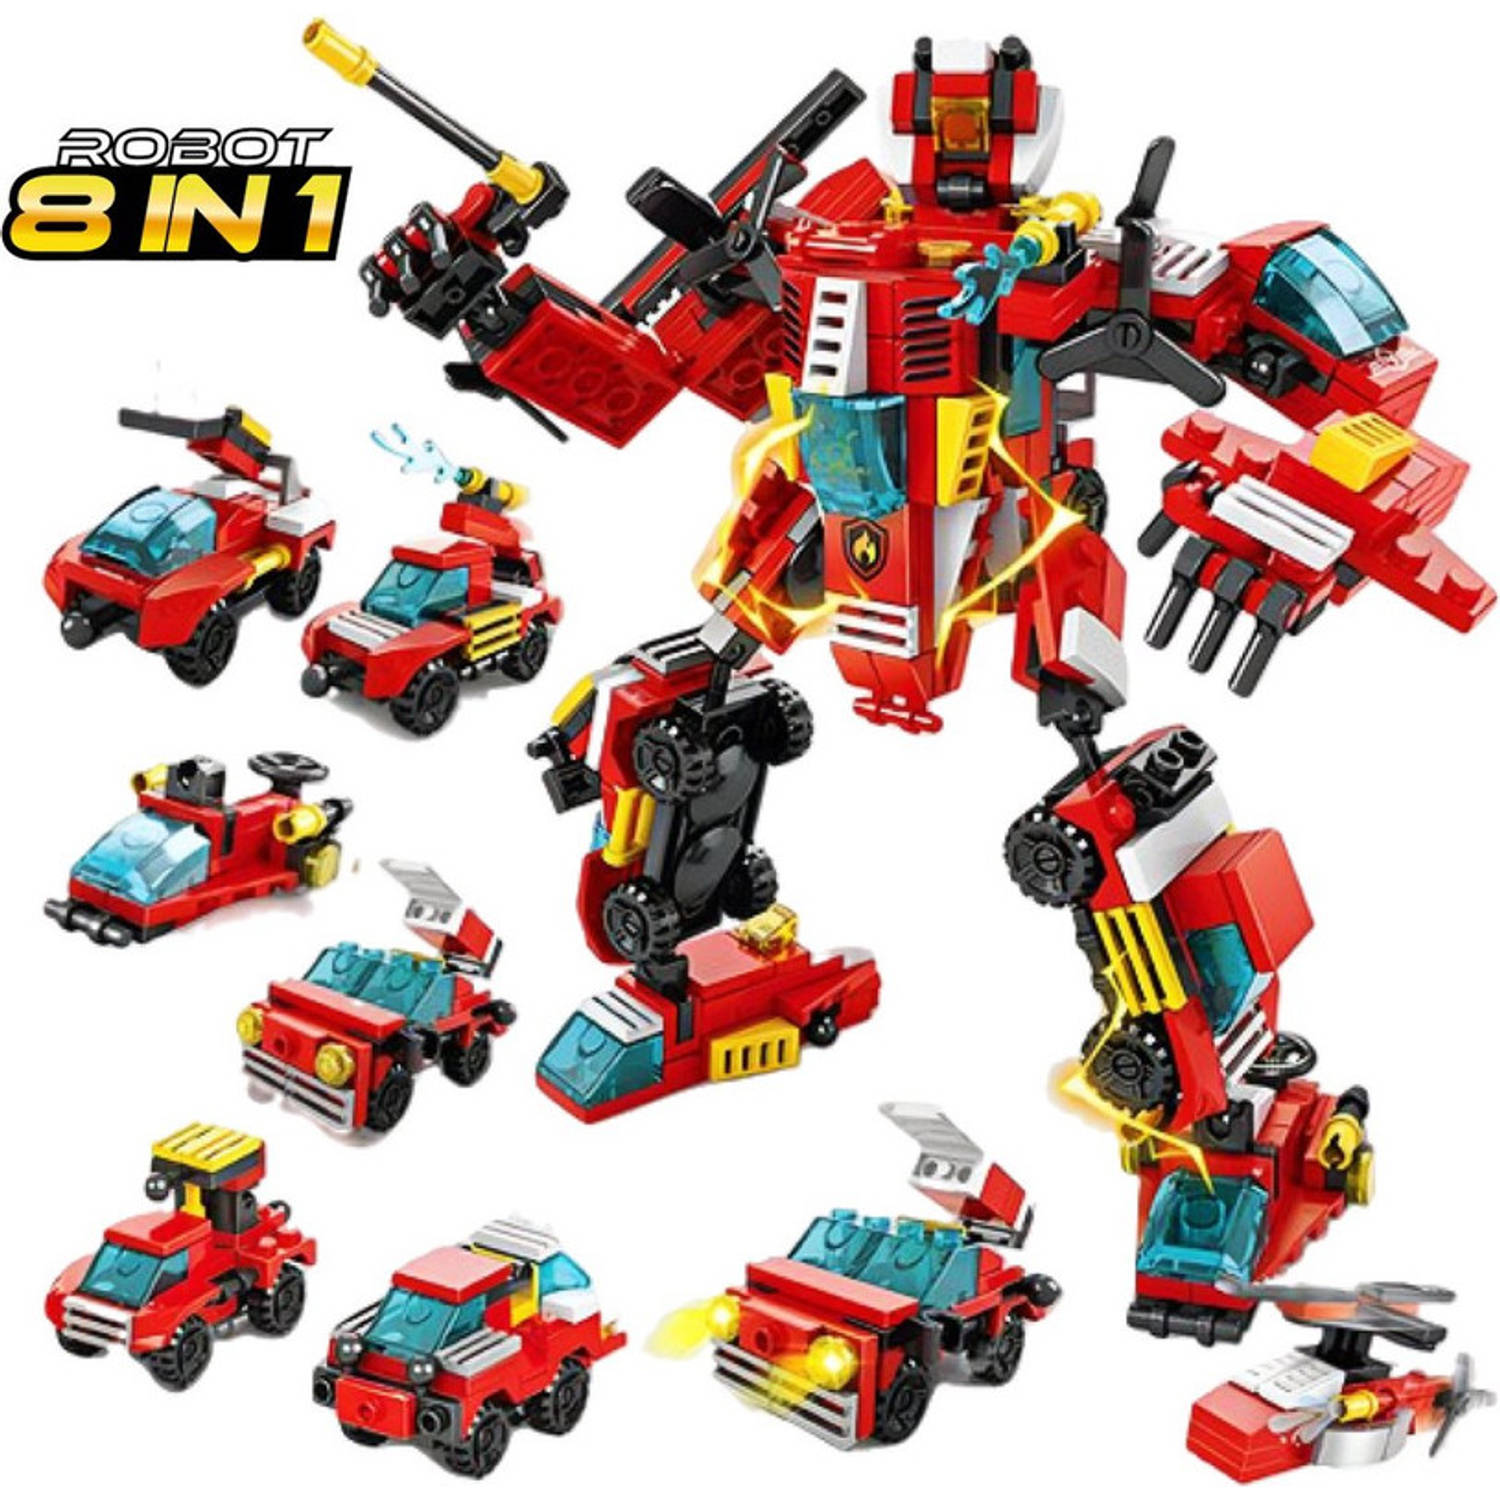 QuchiQ™ Robot speelgoed - Robots - Bouwsets - speelgoed - Speelgoed auto - Politie - Brandweerauto - Bouwpakket - Speelfiguren sets - 356 bouwstenen